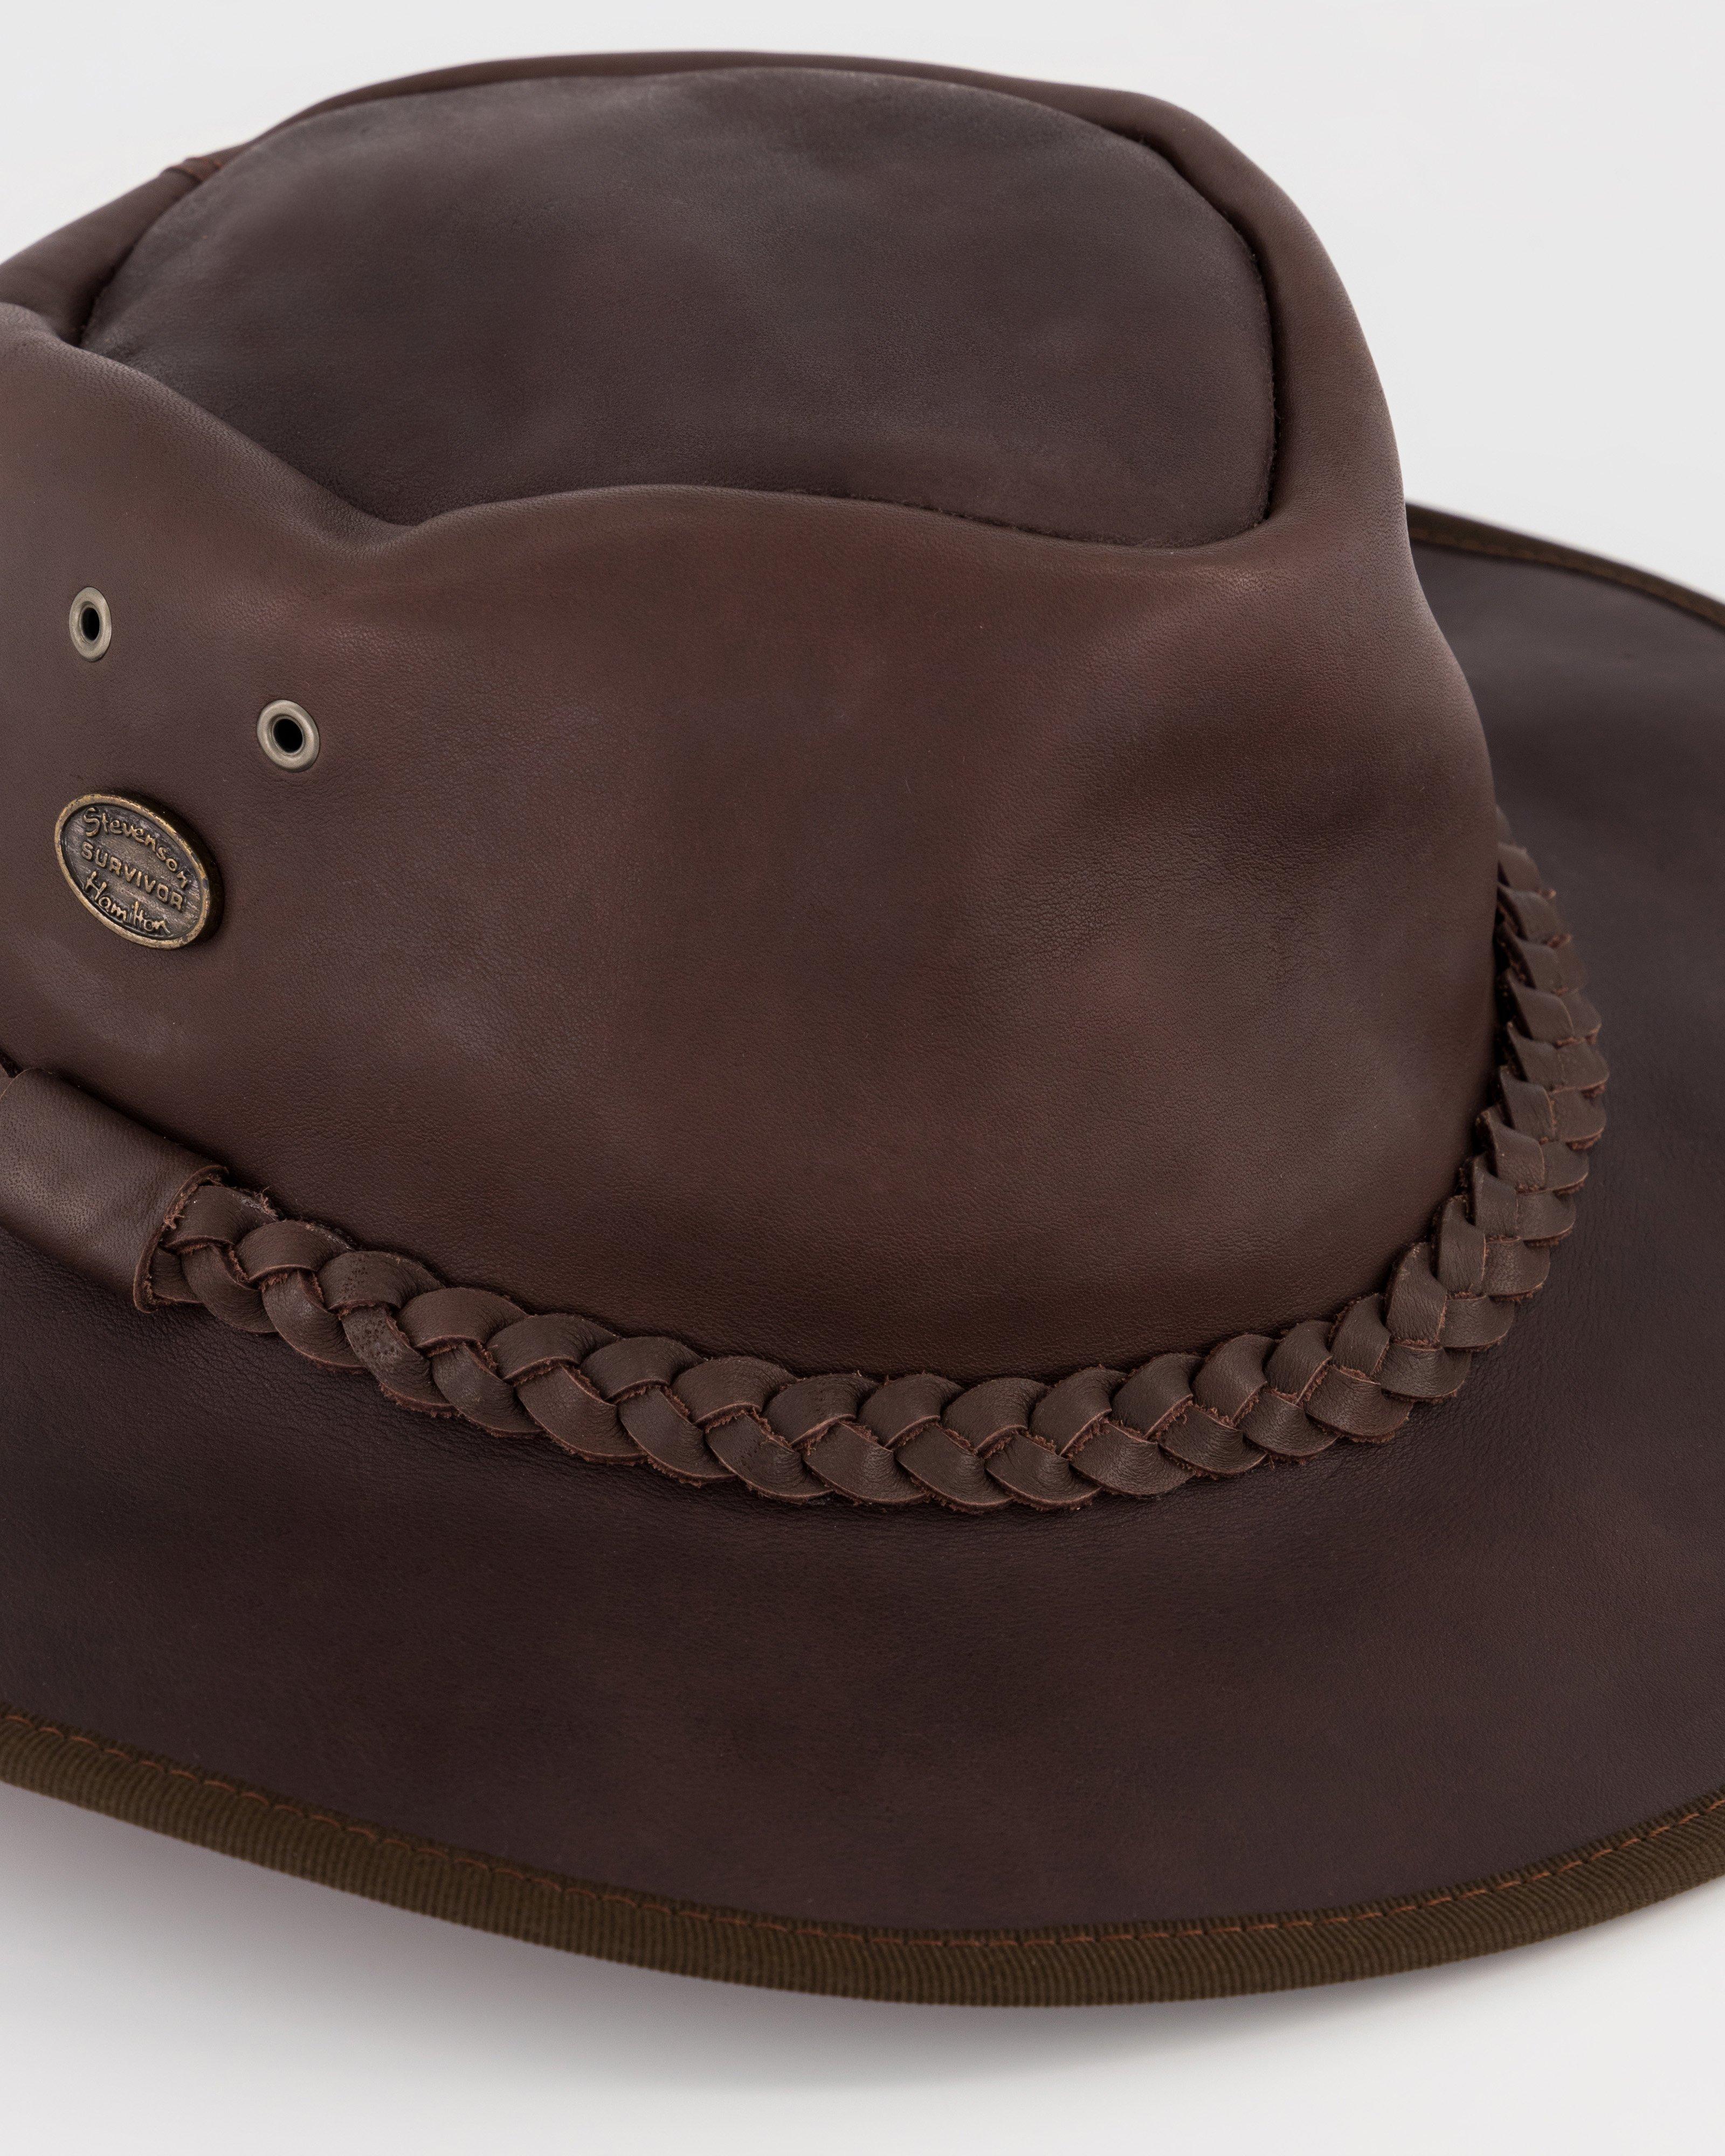 Cape Union Survivor Leather Hat -  Brown